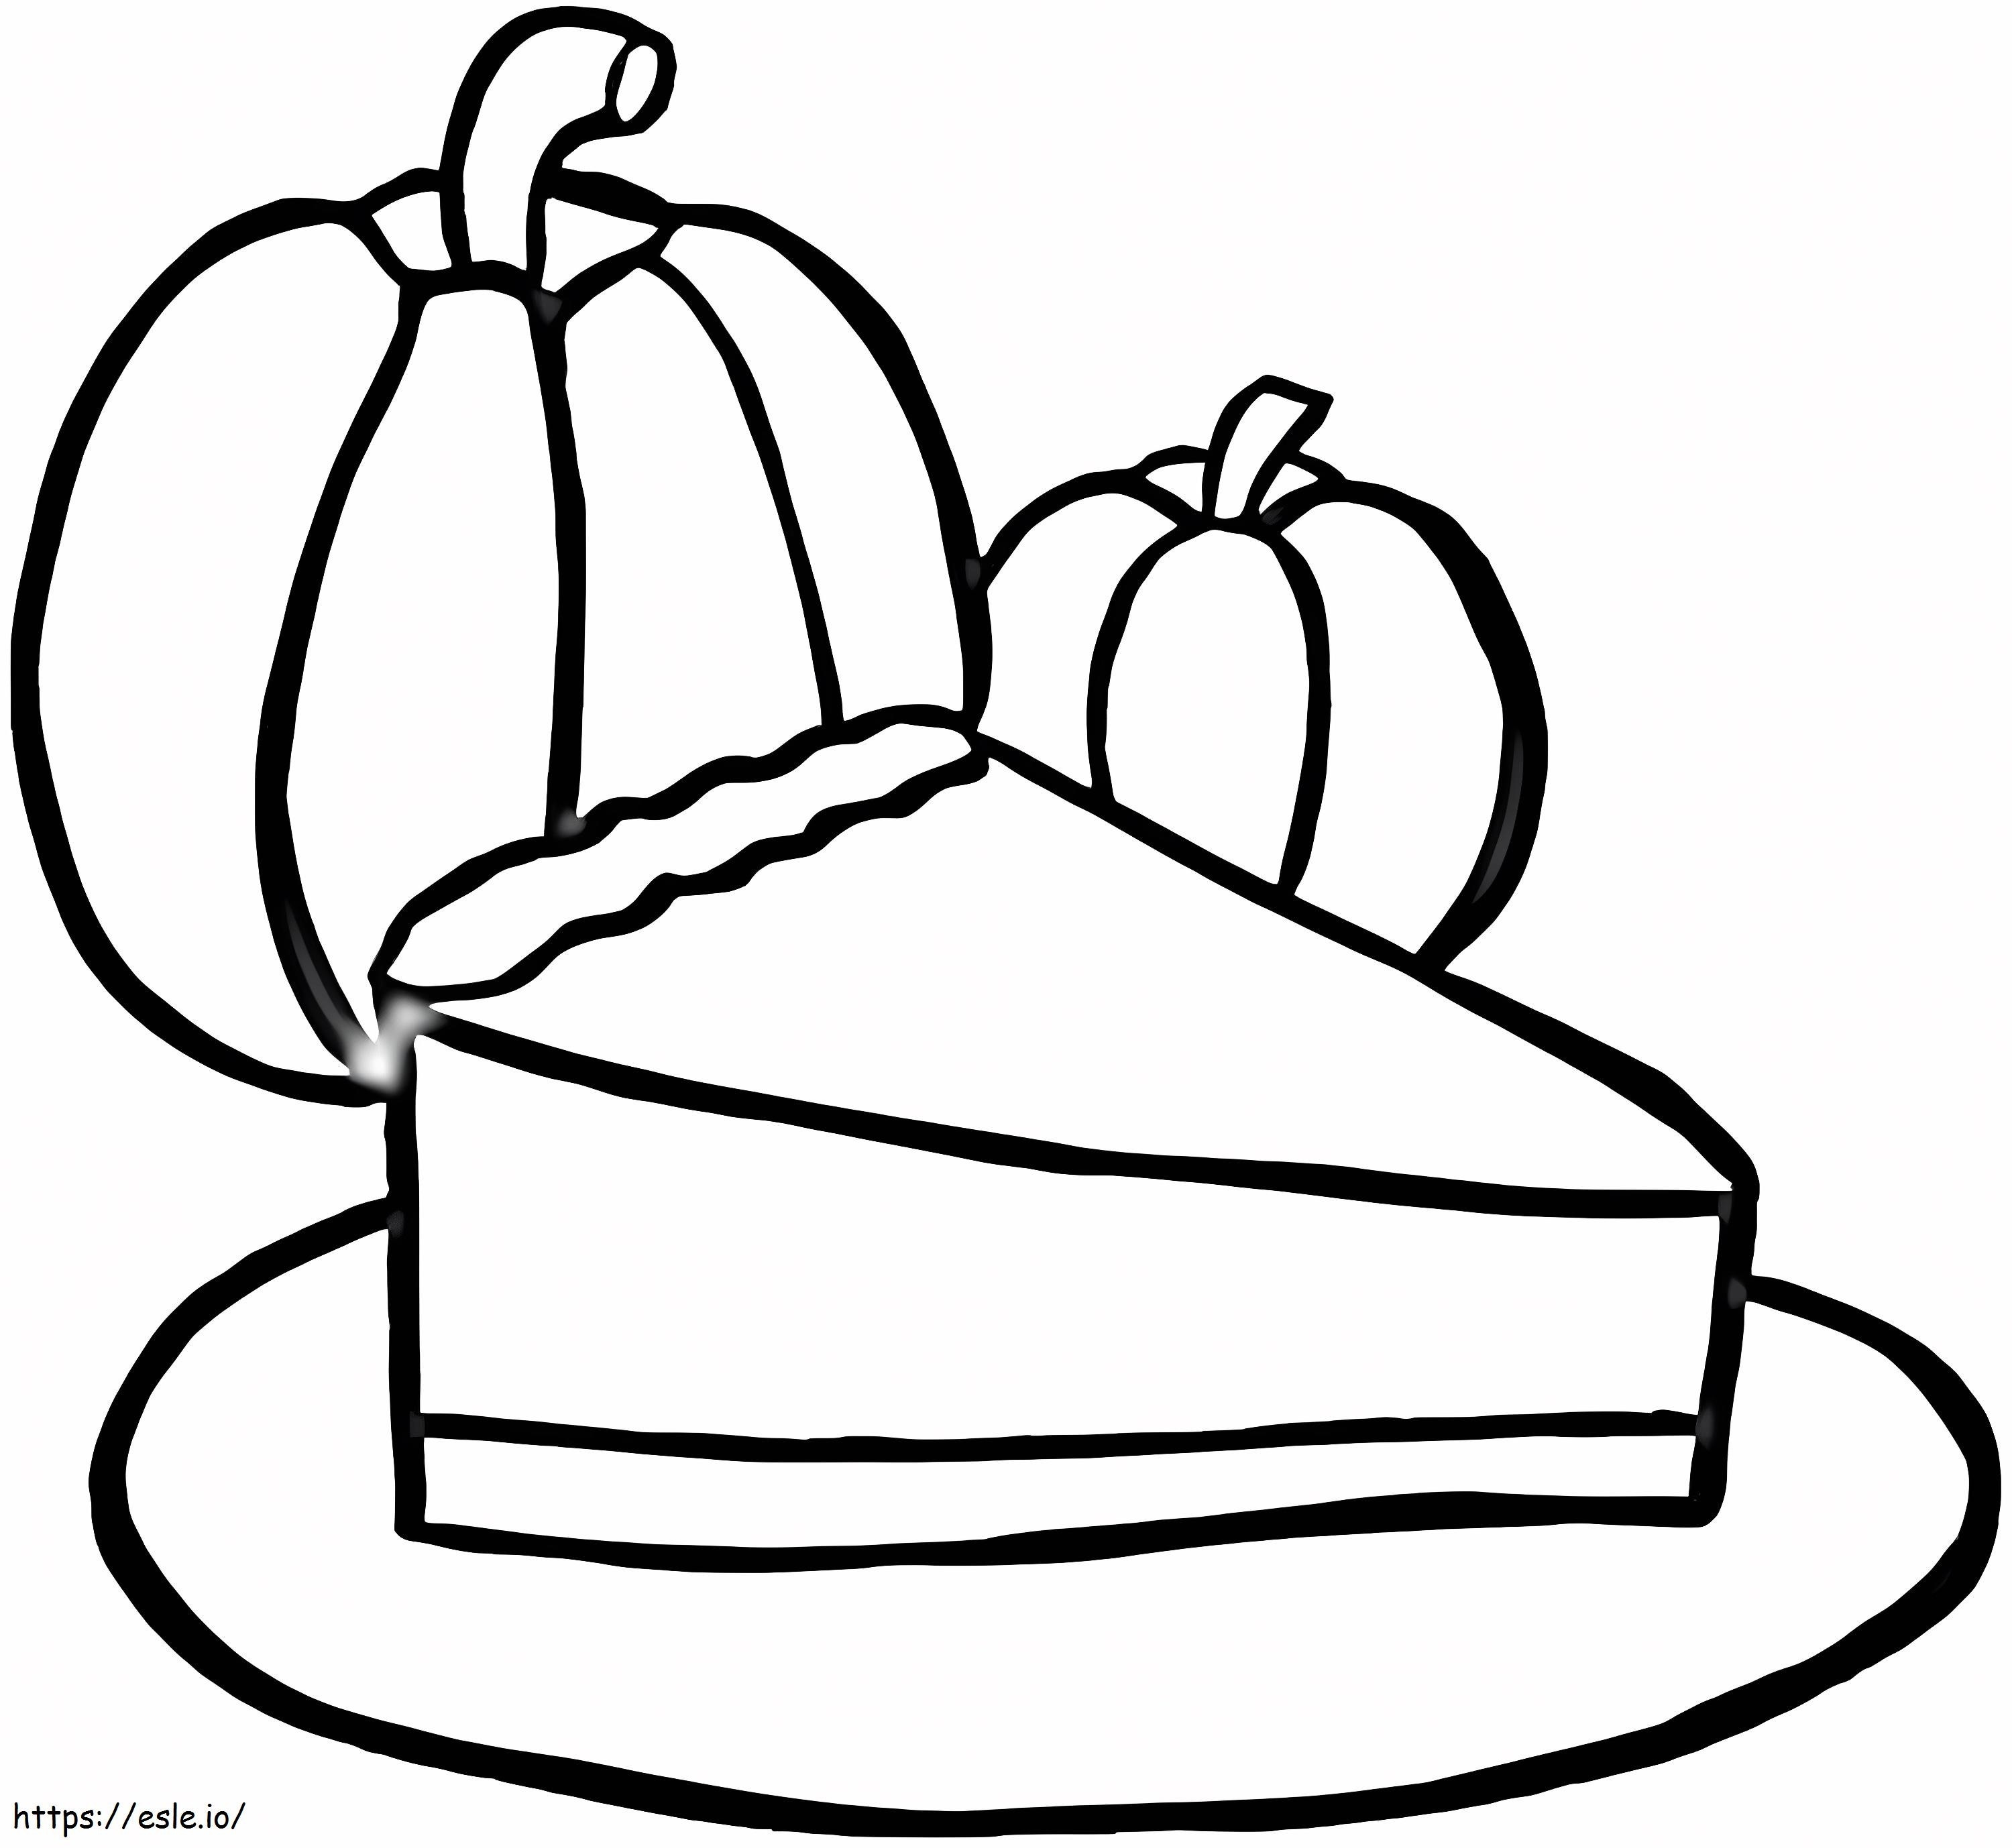 Easy Pumpkin Pie coloring page